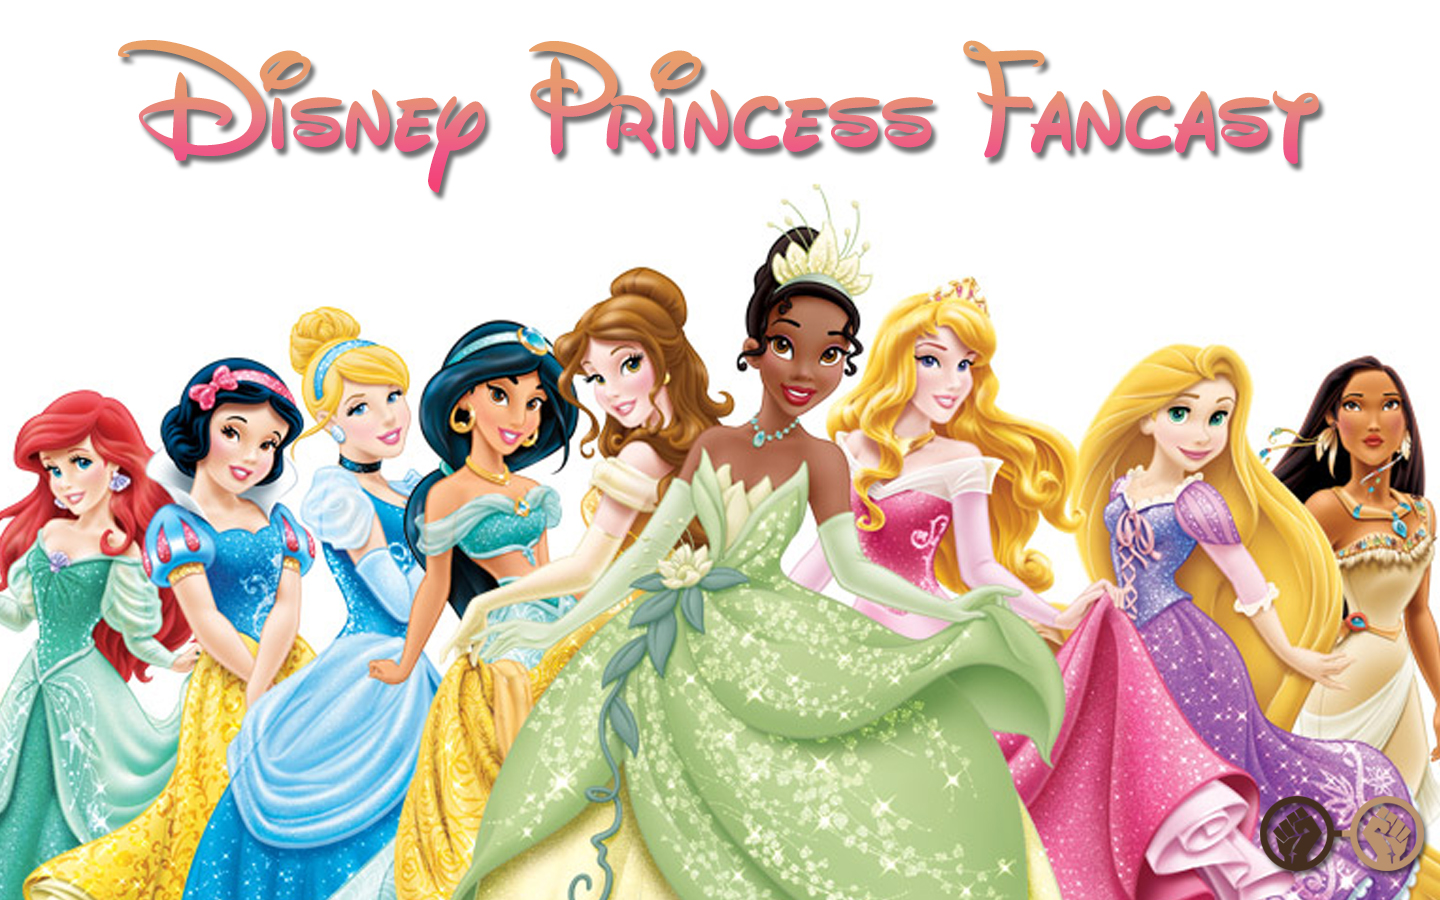 Disney Princess Live-Action Fancast